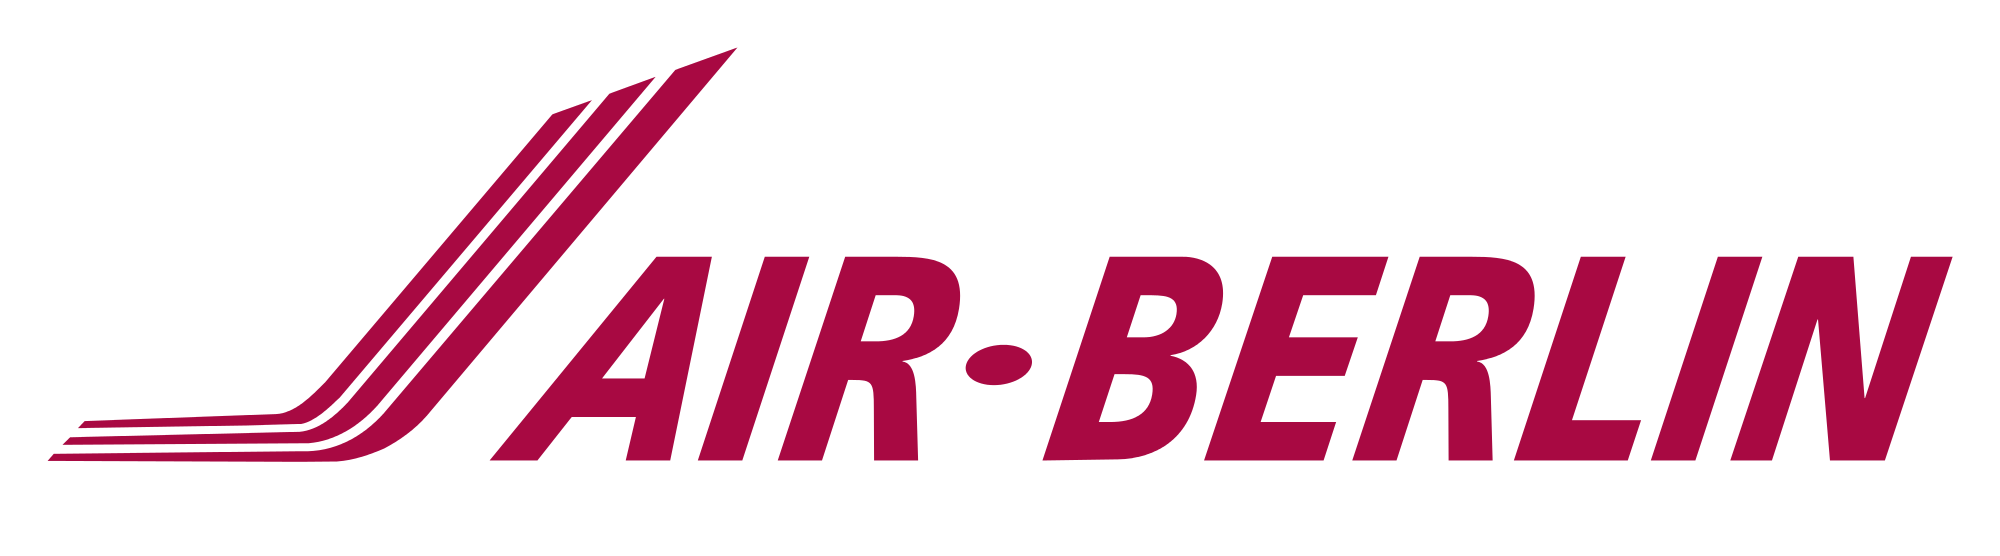 Air Berlin Logo Vector PNG - 35587